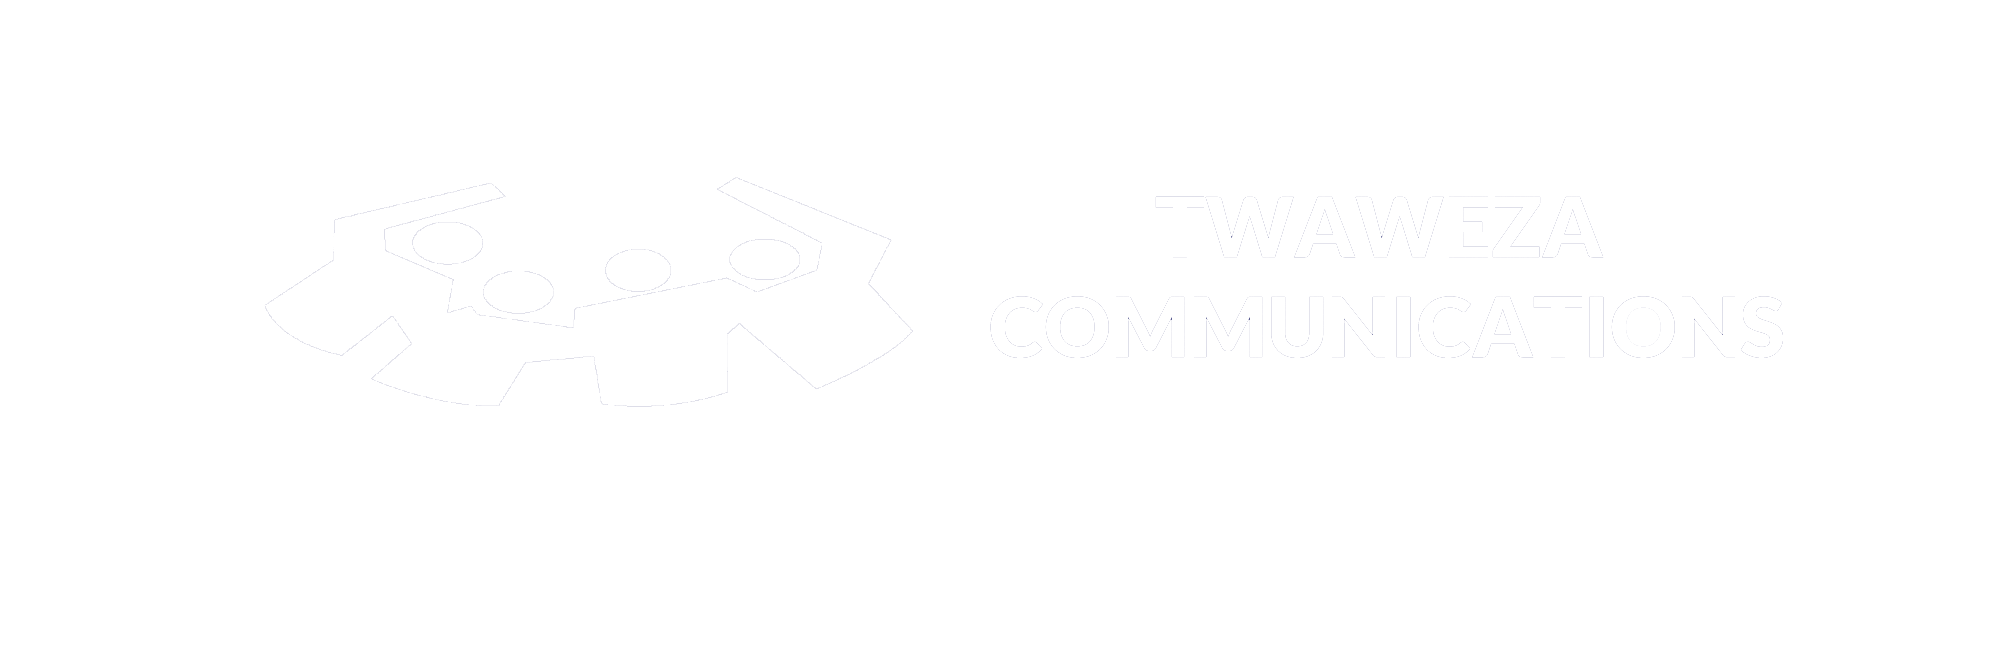 Twaweza Communications Logo